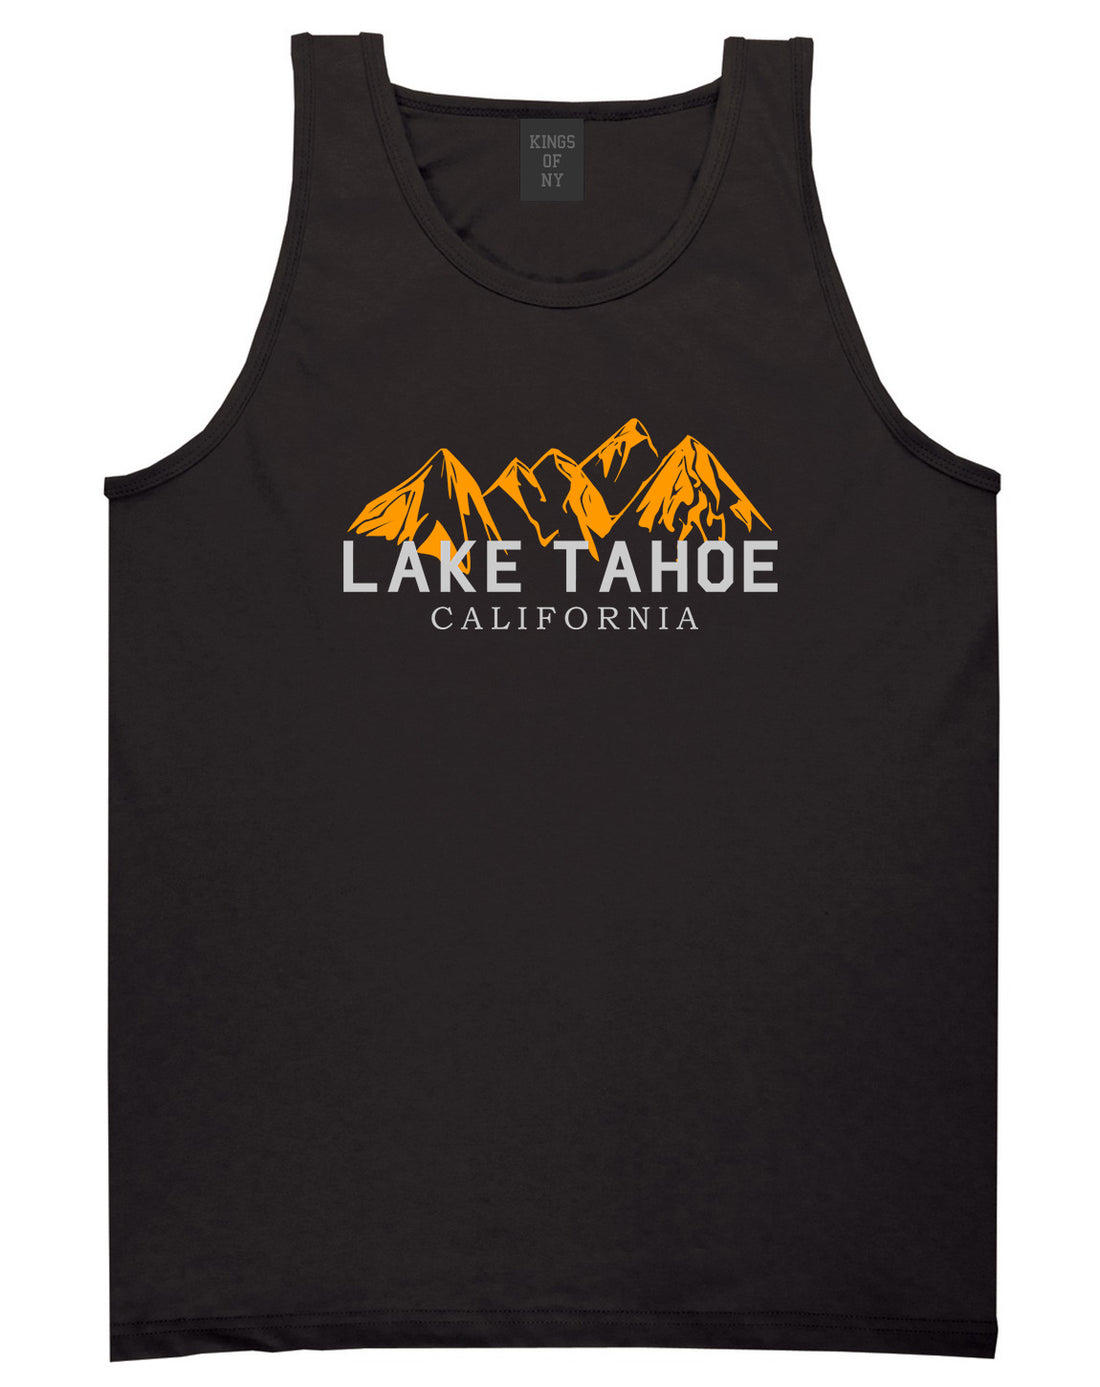 Lake Tahoe California Mountains Mens Tank Top Shirt Black